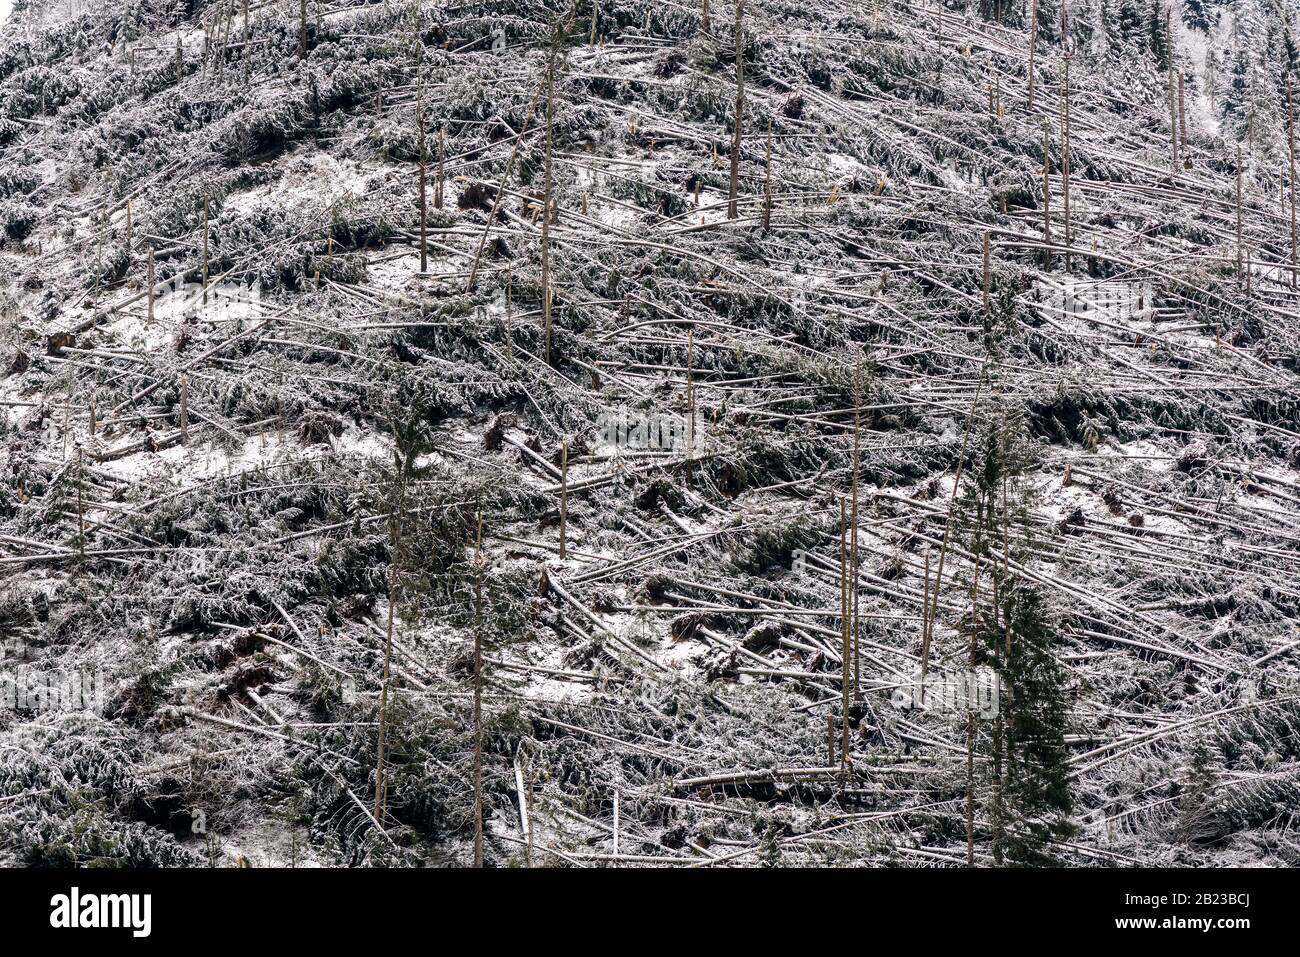 Windfall in foresta. Danni causati dalla tempesta. Alberi caduti nella foresta di conifere dopo un forte vento di uragano in Romania. Foto Stock